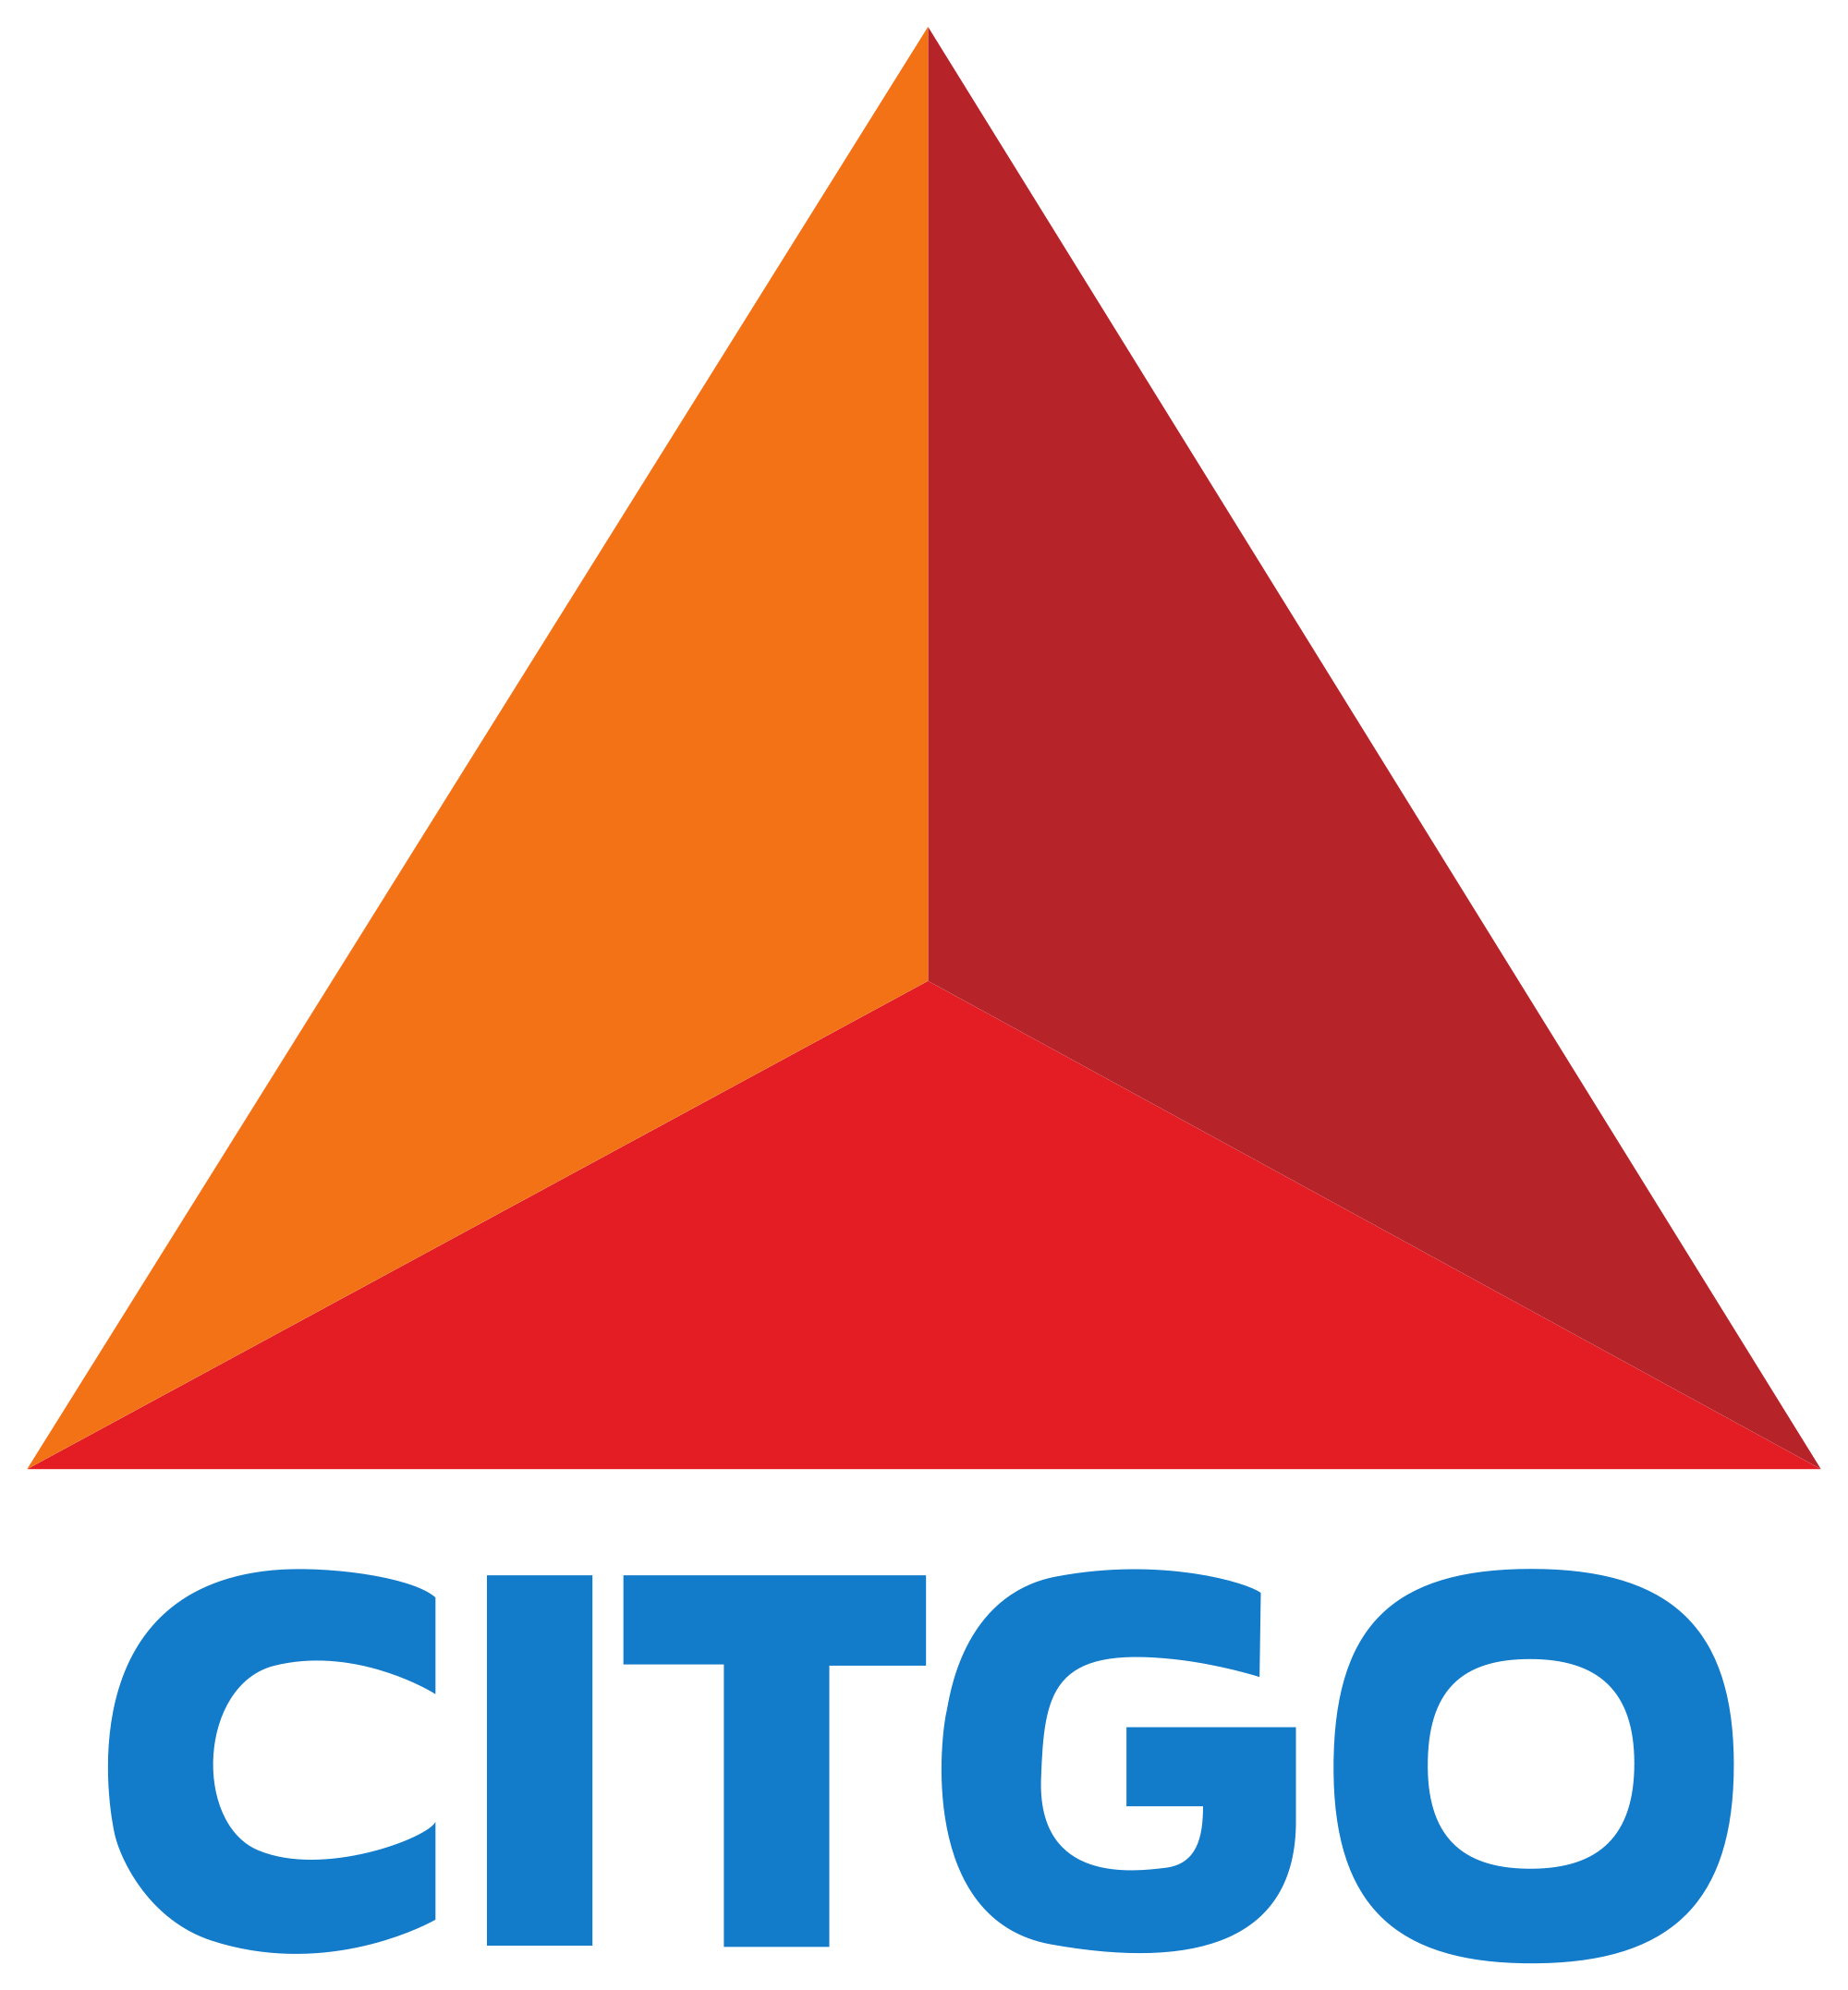 Citgo Logo - Citgo logo.svg